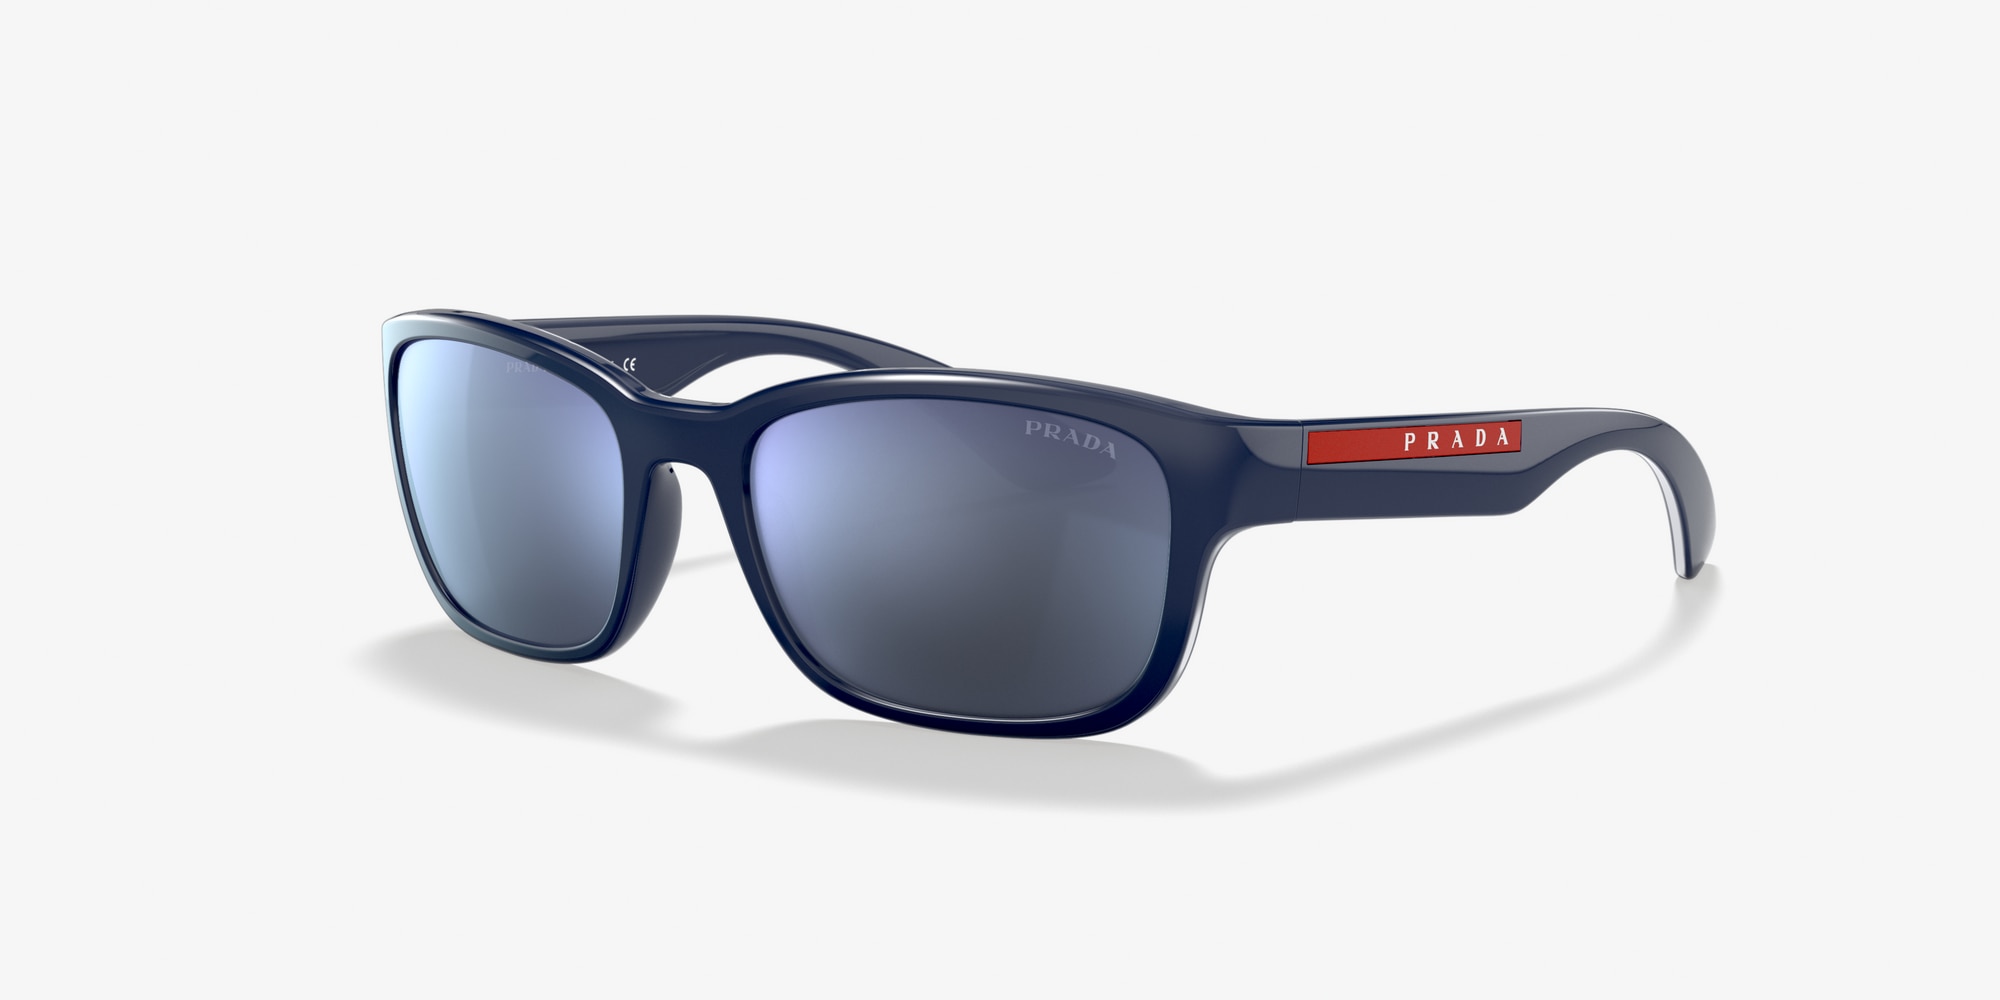 prada sunglasses blue frame